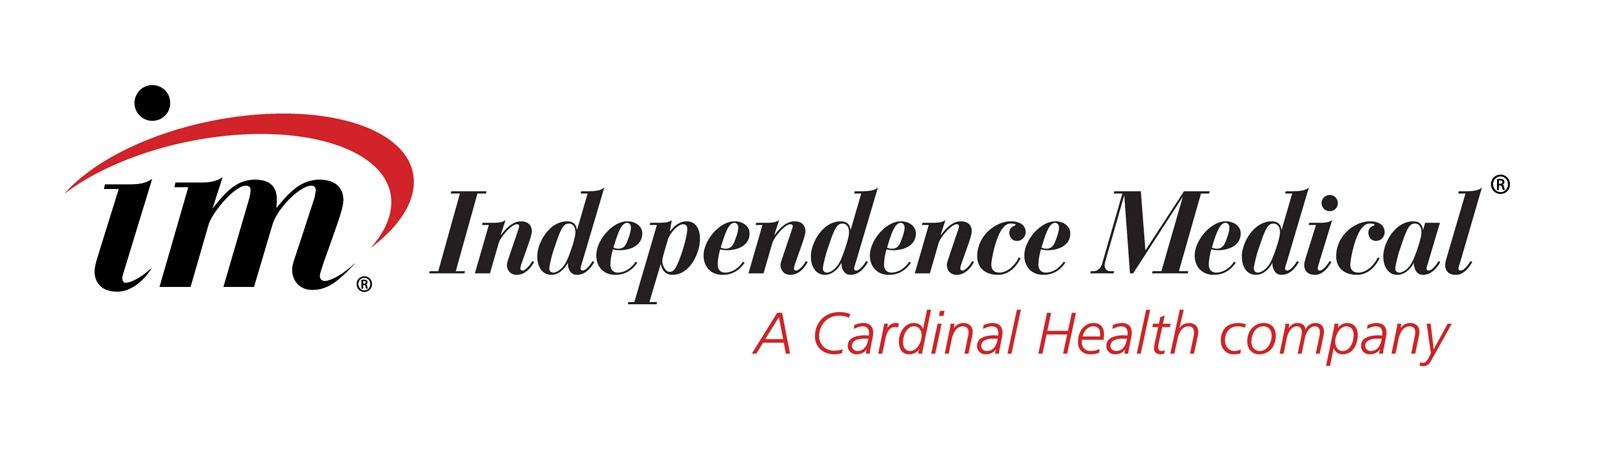 Independence Medical